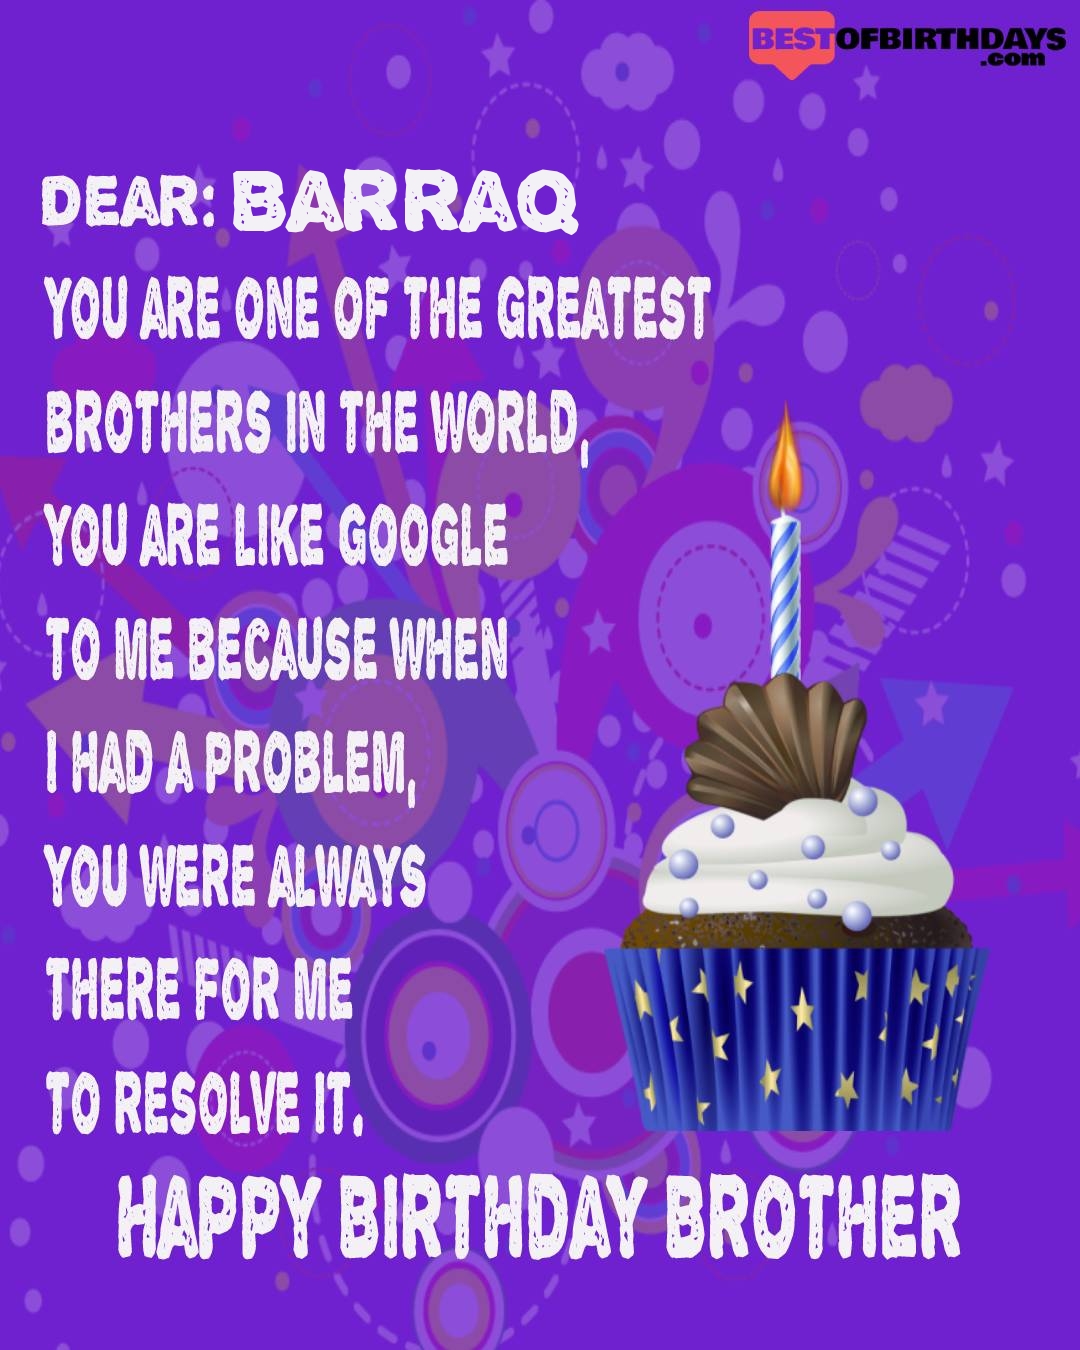 Happy birthday barraq bhai brother bro